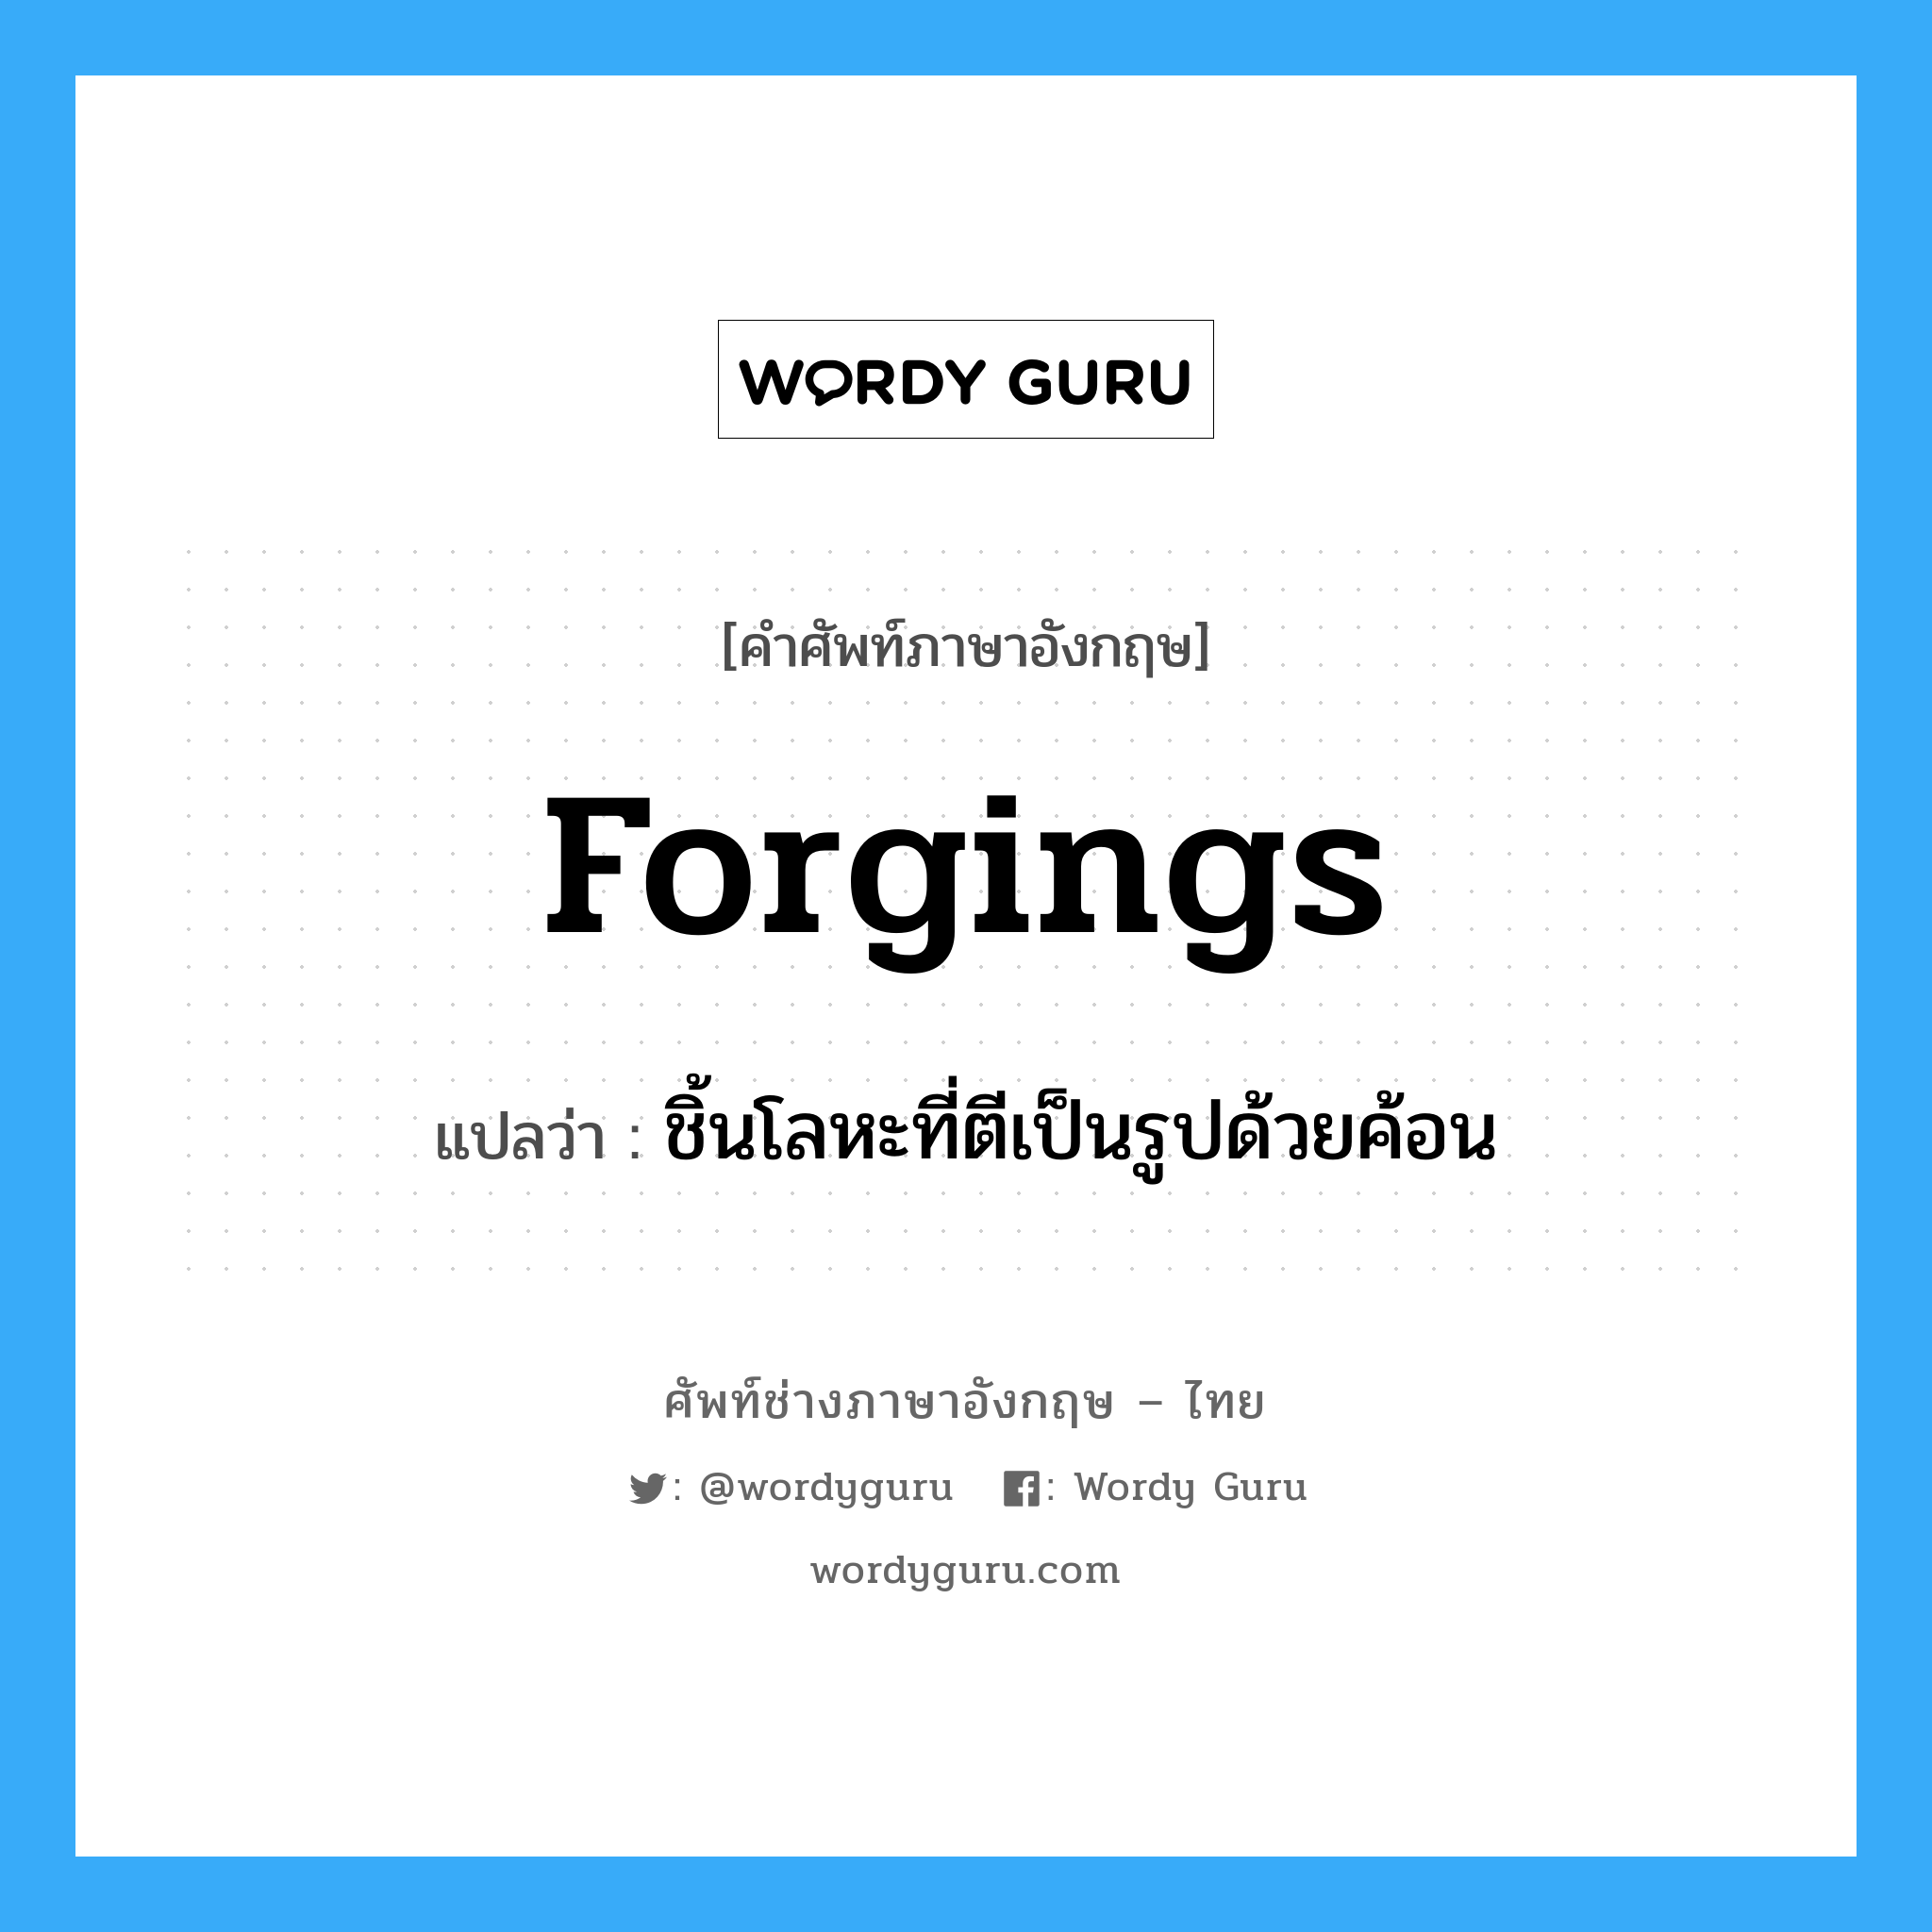 forgings แปลว่า?, คำศัพท์ช่างภาษาอังกฤษ - ไทย forgings คำศัพท์ภาษาอังกฤษ forgings แปลว่า ชิ้นโลหะที่ตีเป็นรูปด้วยค้อน